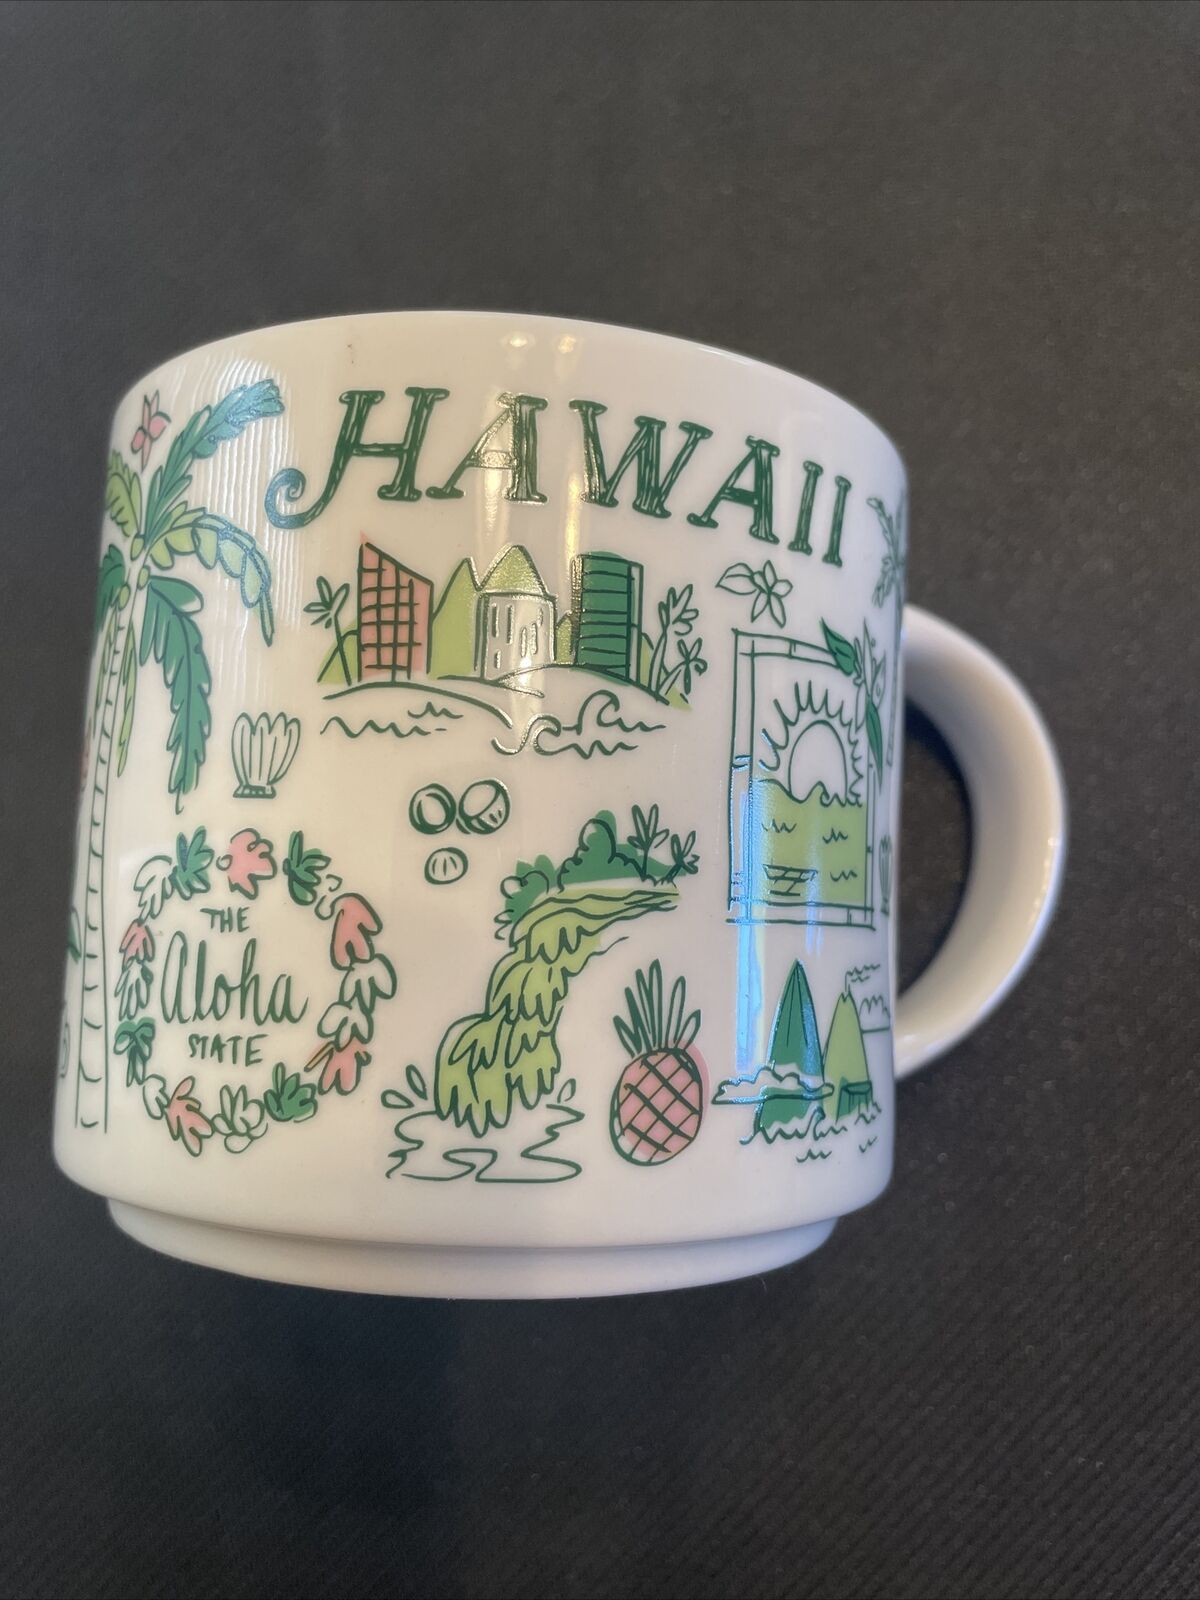 STARBUCKS COFFEE MUG - HAWAII